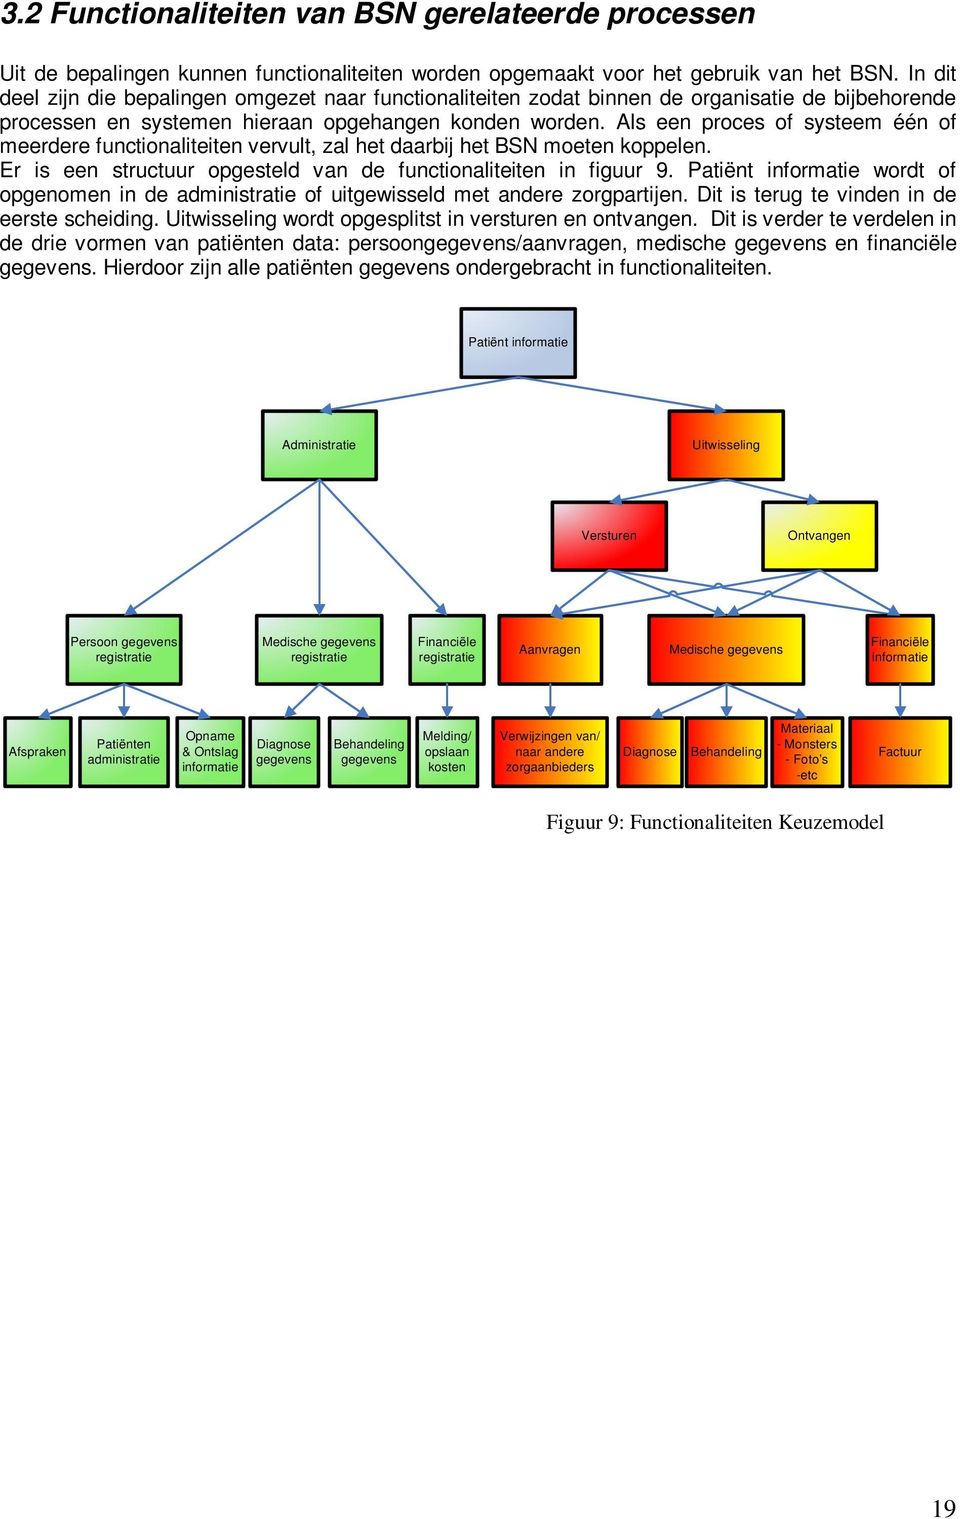 Als een proces of systeem één of meerdere functionaliteiten vervult, zal het daarbij het BSN moeten koppelen. Er is een structuur opgesteld van de functionaliteiten in figuur 9.